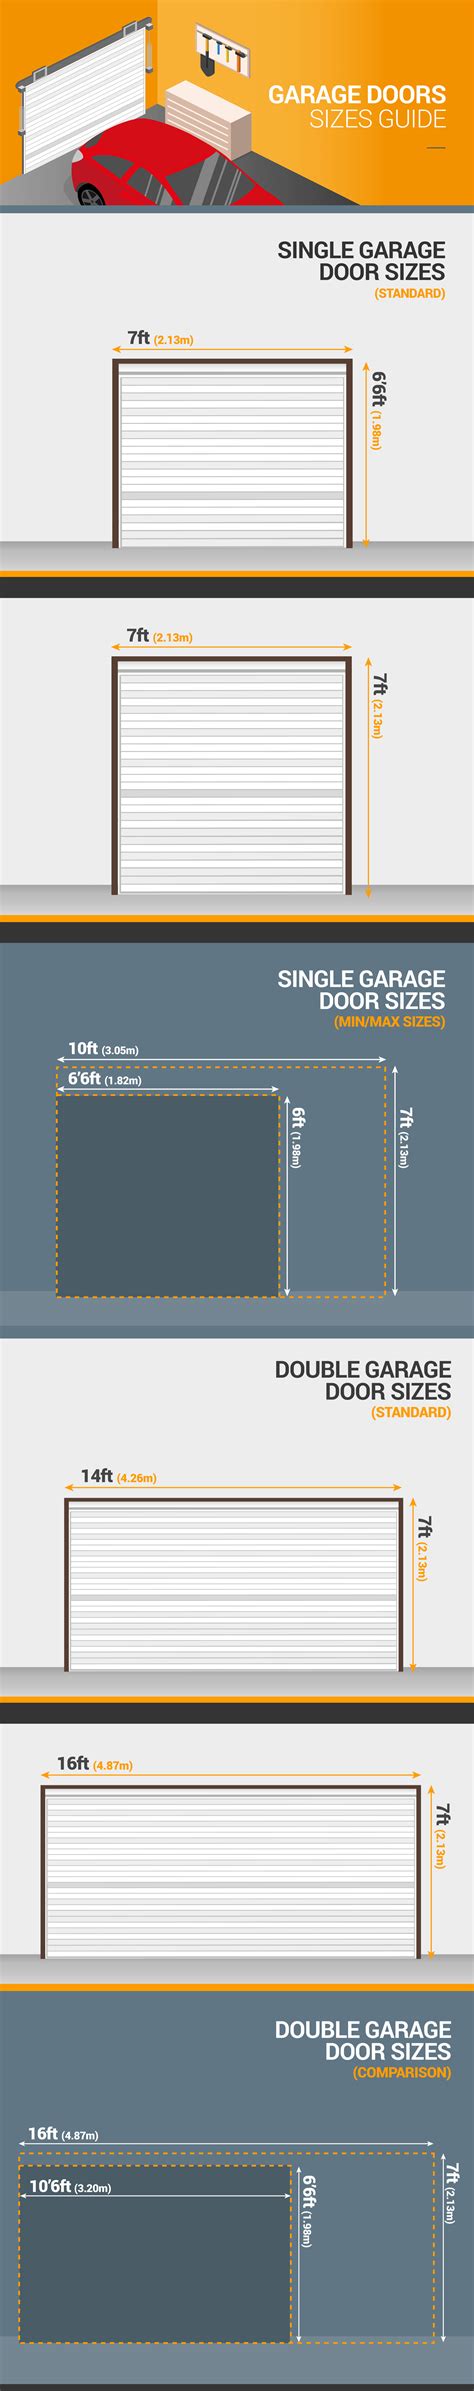 Garage Doors Sizes Guide Standard Garage Door Dimensions Doormatic